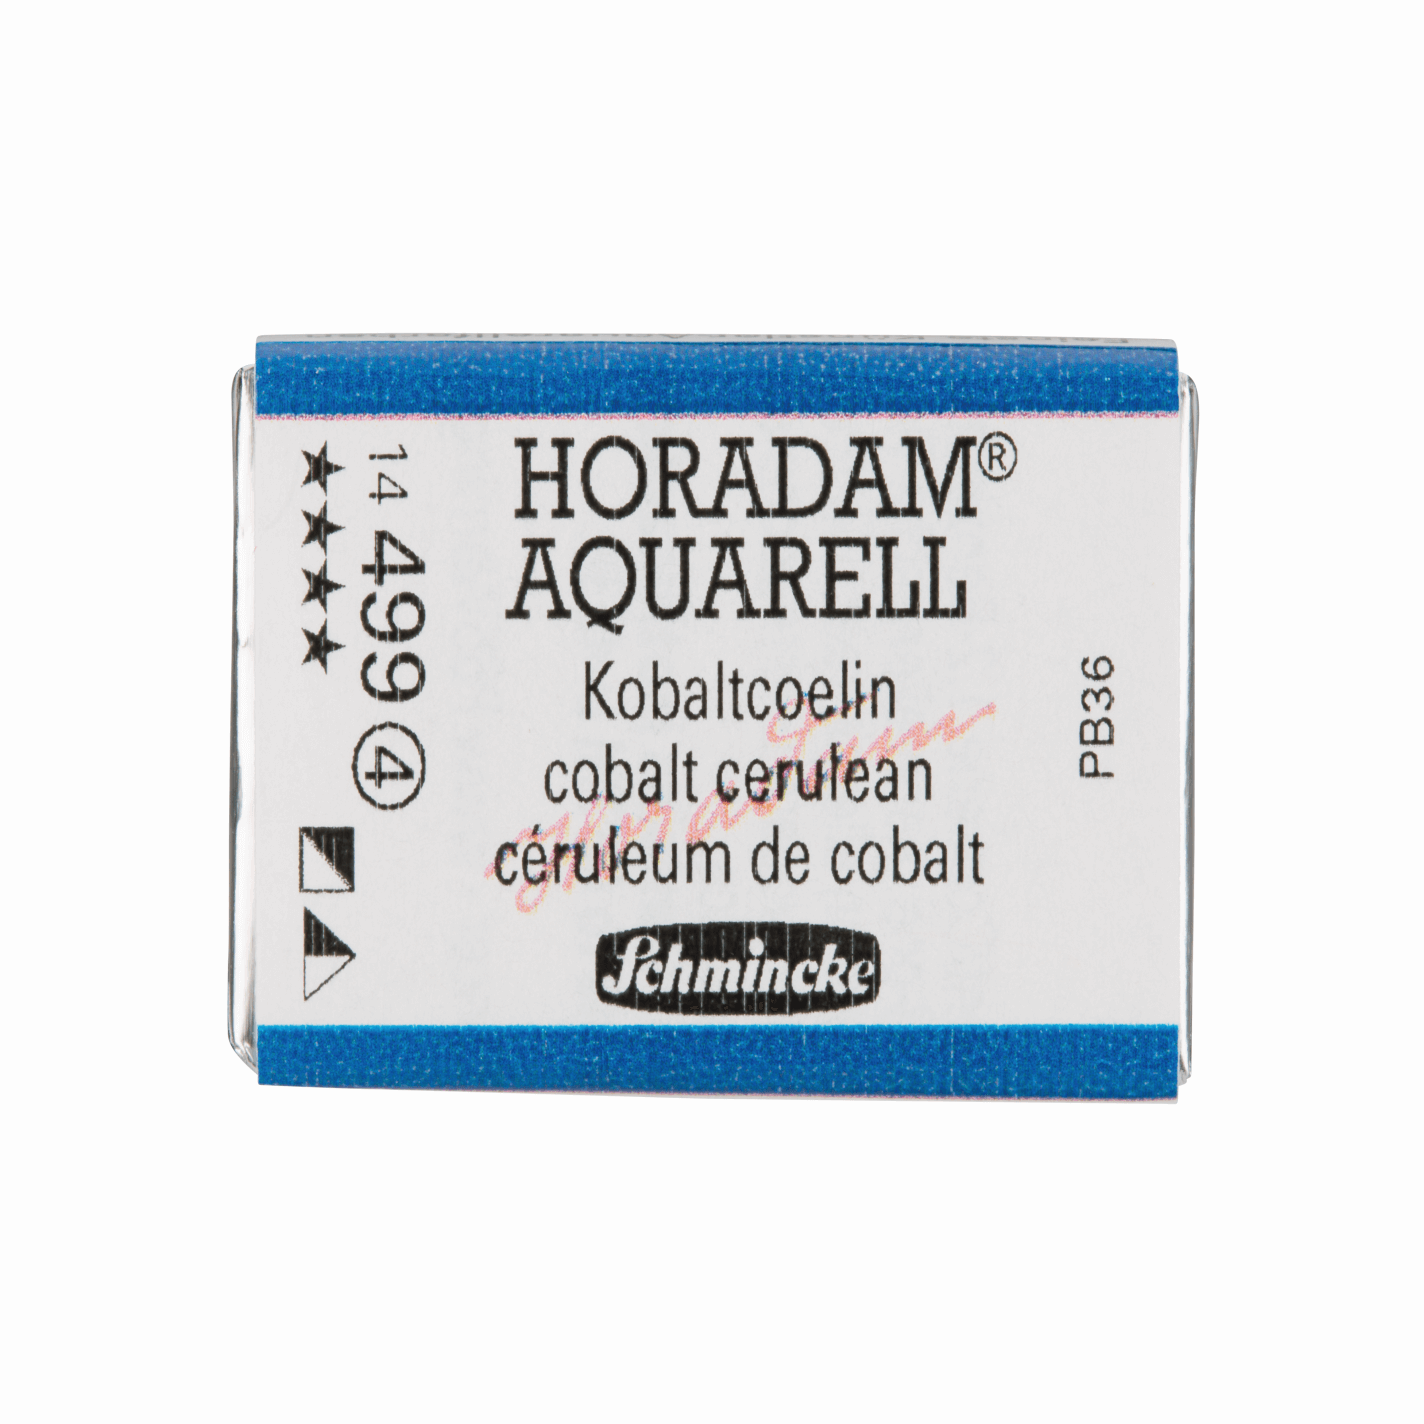 Schmincke Horadam Aquarell pans 1/1 pan Cobalt Cerulean